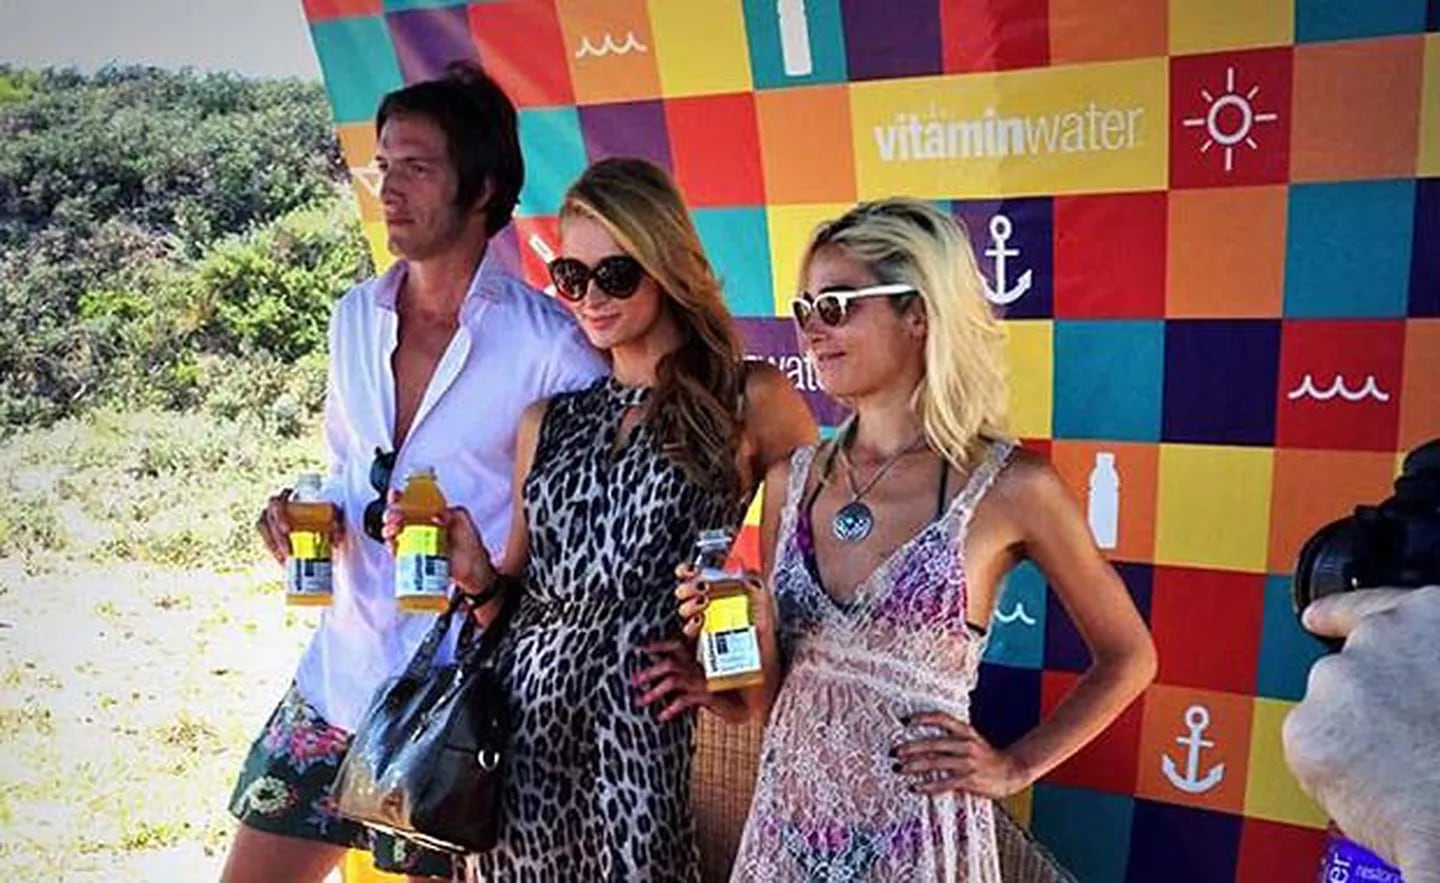 Iván de Pineda, Paris Hilton y Juana Viale en la promoción de una bebida. (Foto: Web)